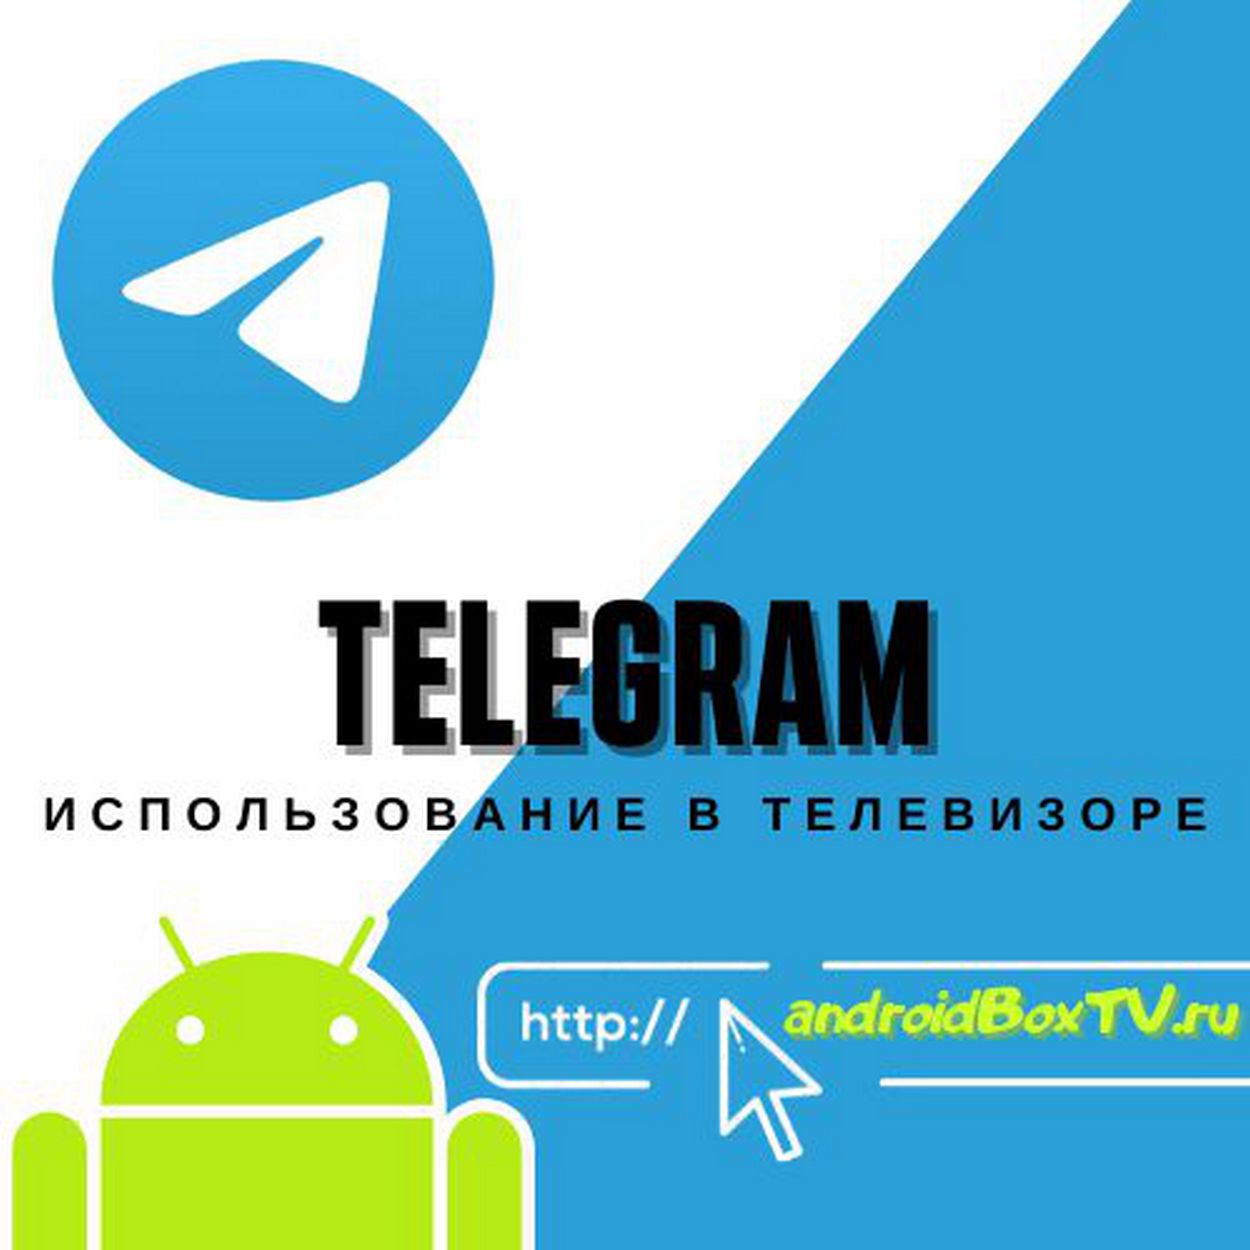 Программа для андроид тв телеграмм (120) фото